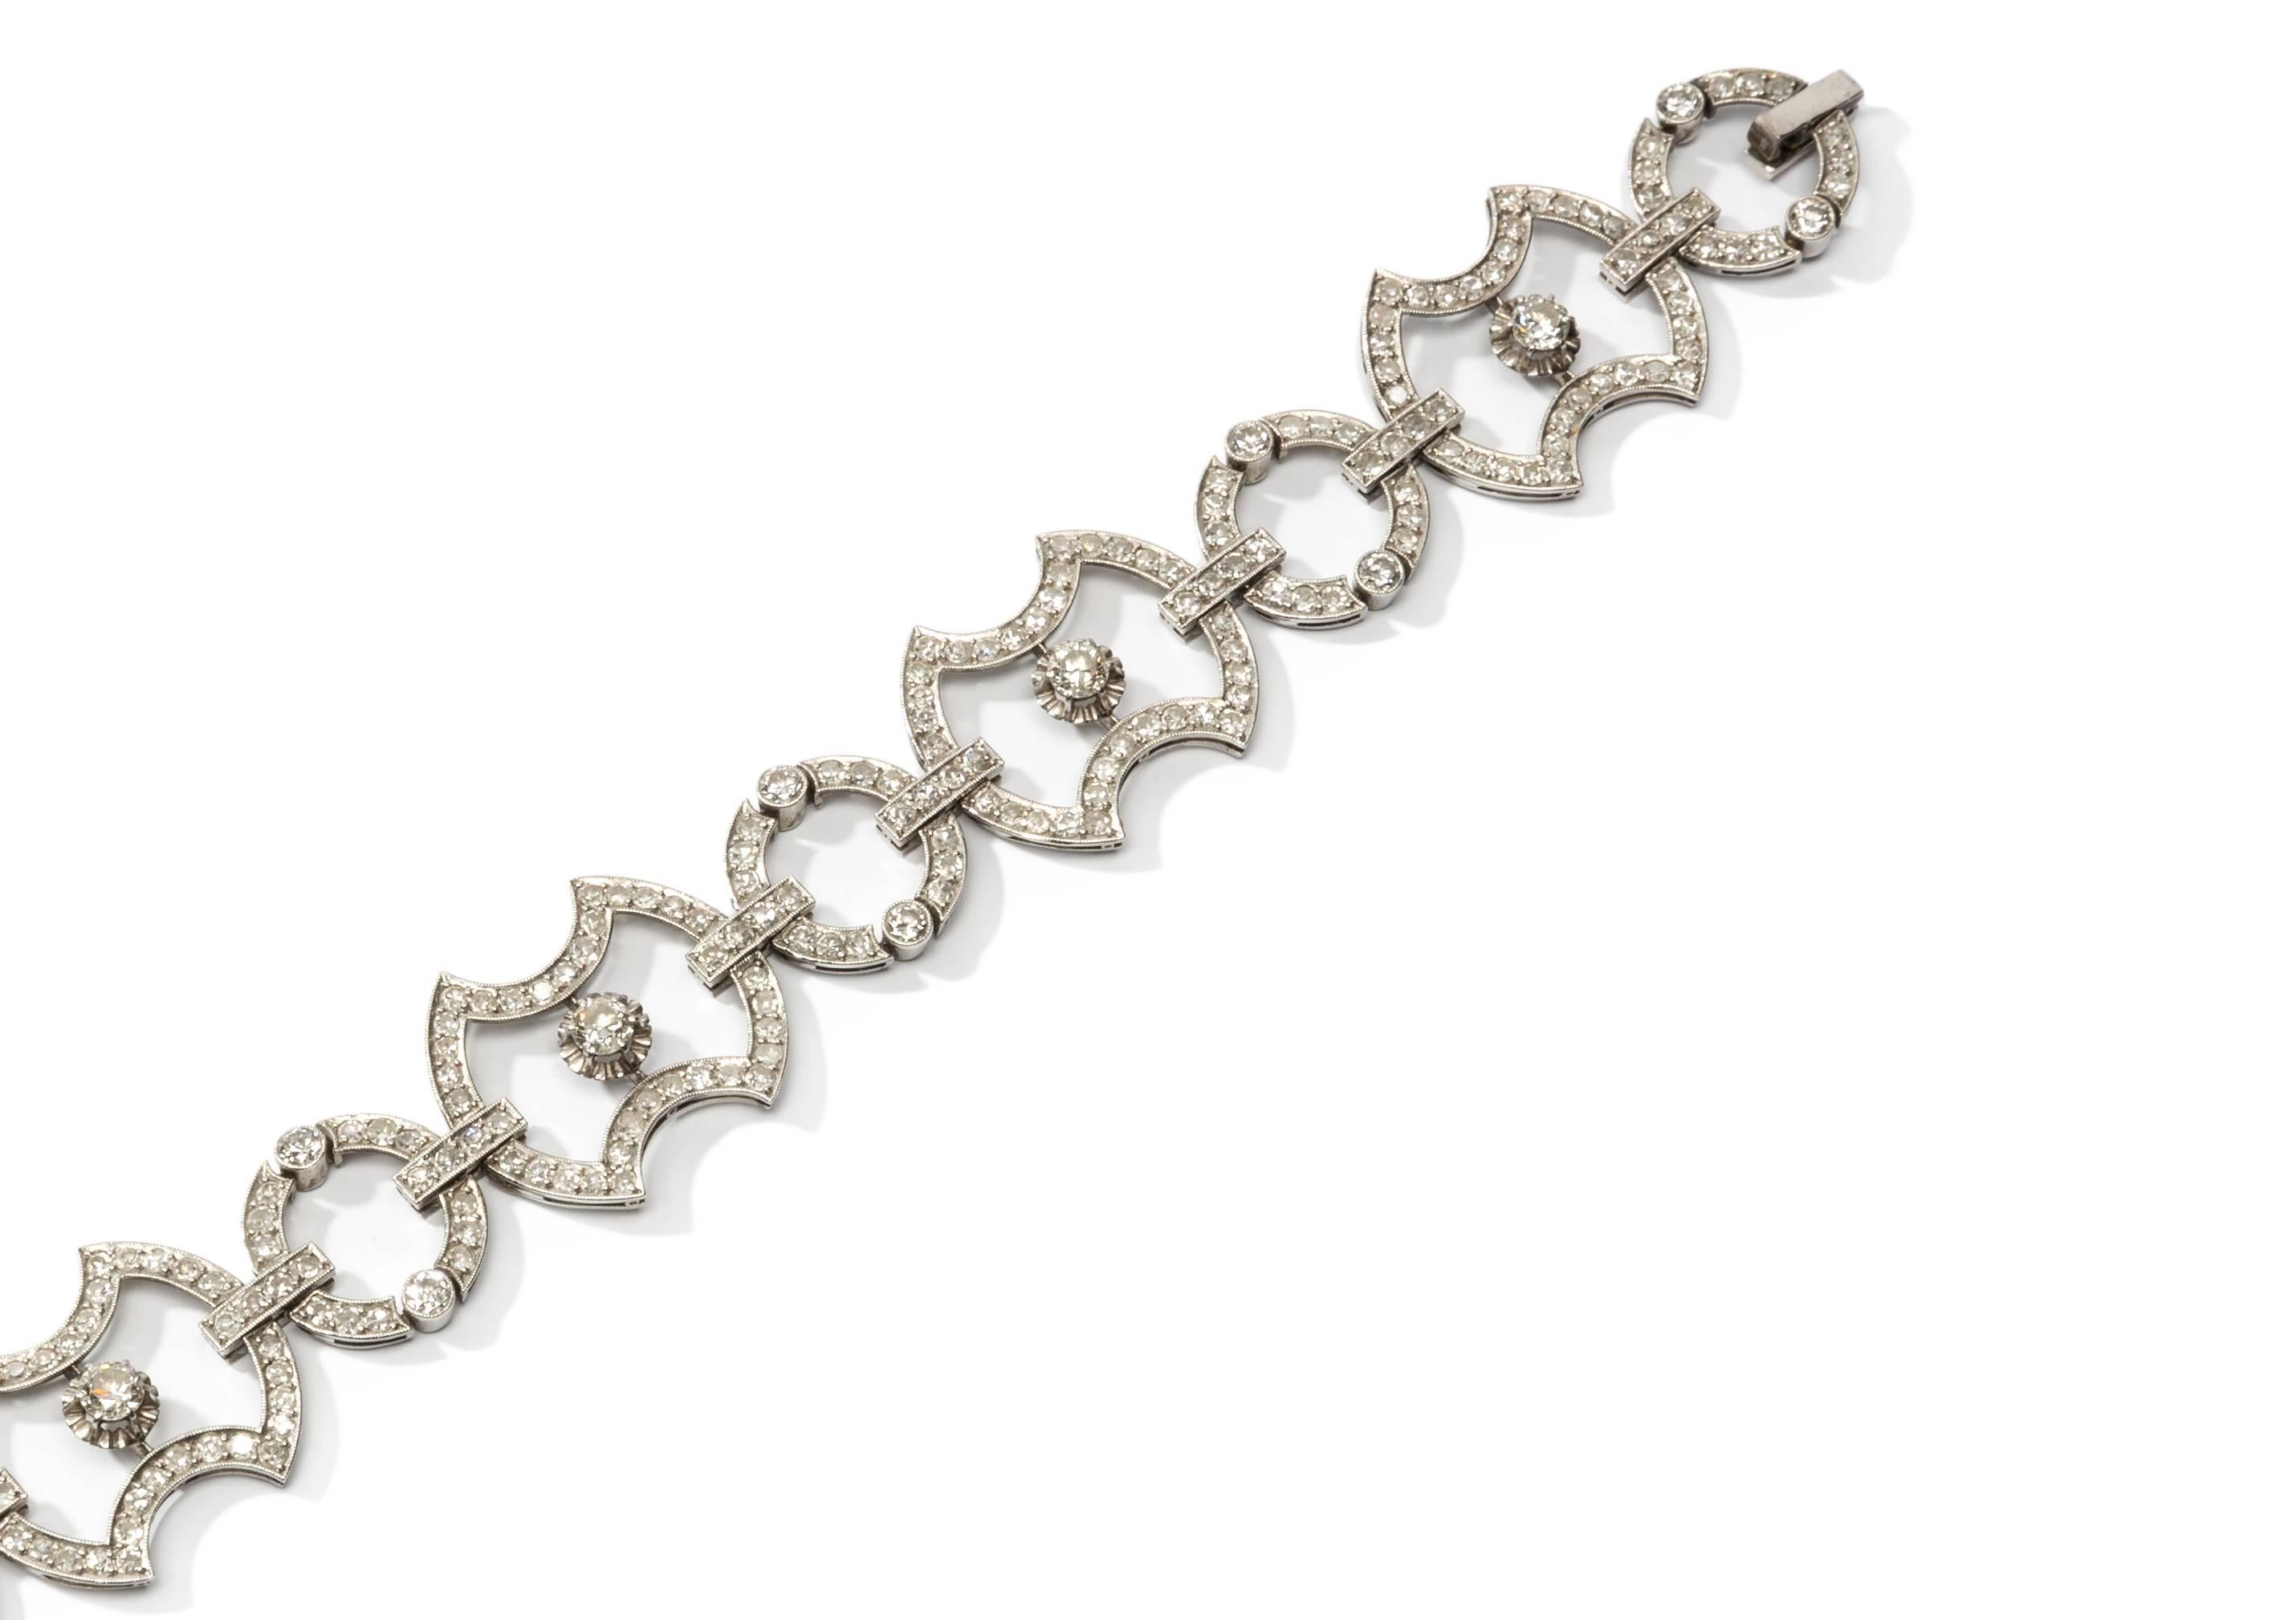 Brilliant Cut Art Deco Diamond 18 Carat White Gold Link Bracelet For Sale